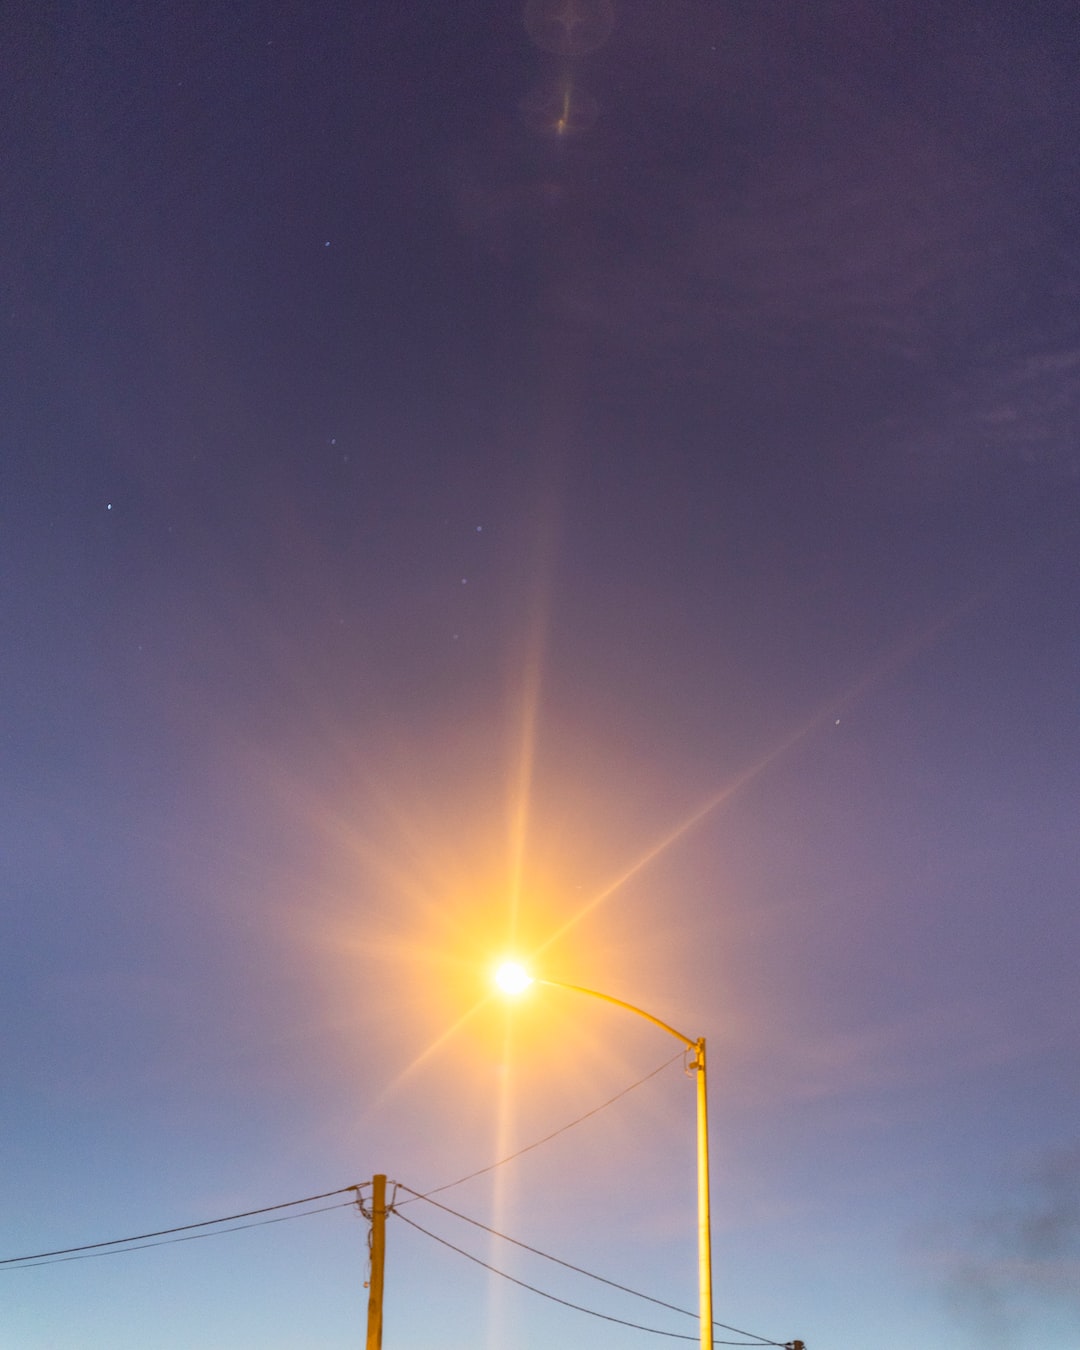 Orange streetlight against the star speckled purple night sky.